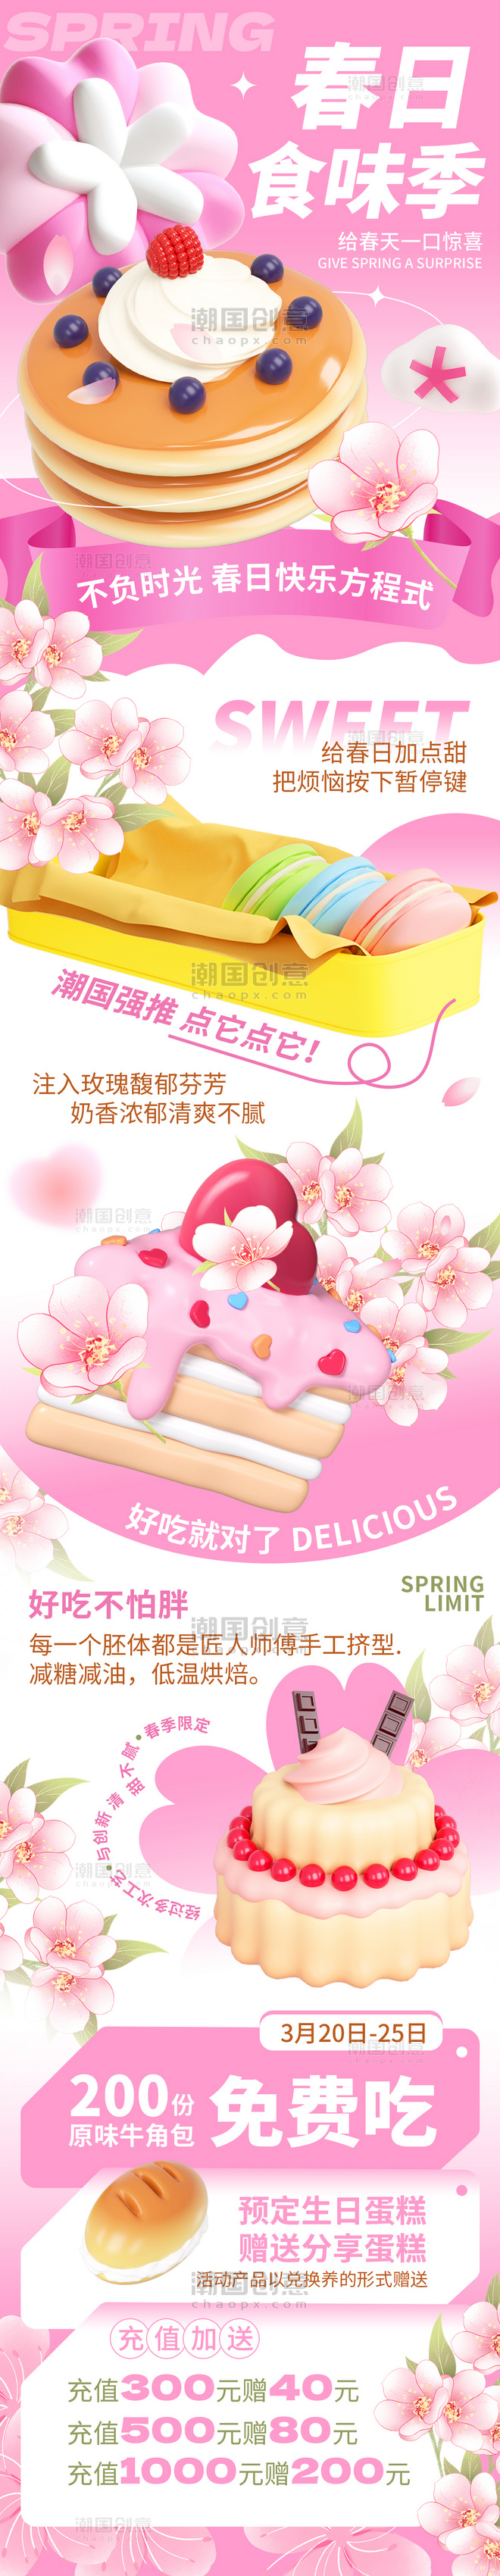 粉色春季营销餐饮美食甜品H5活动长图